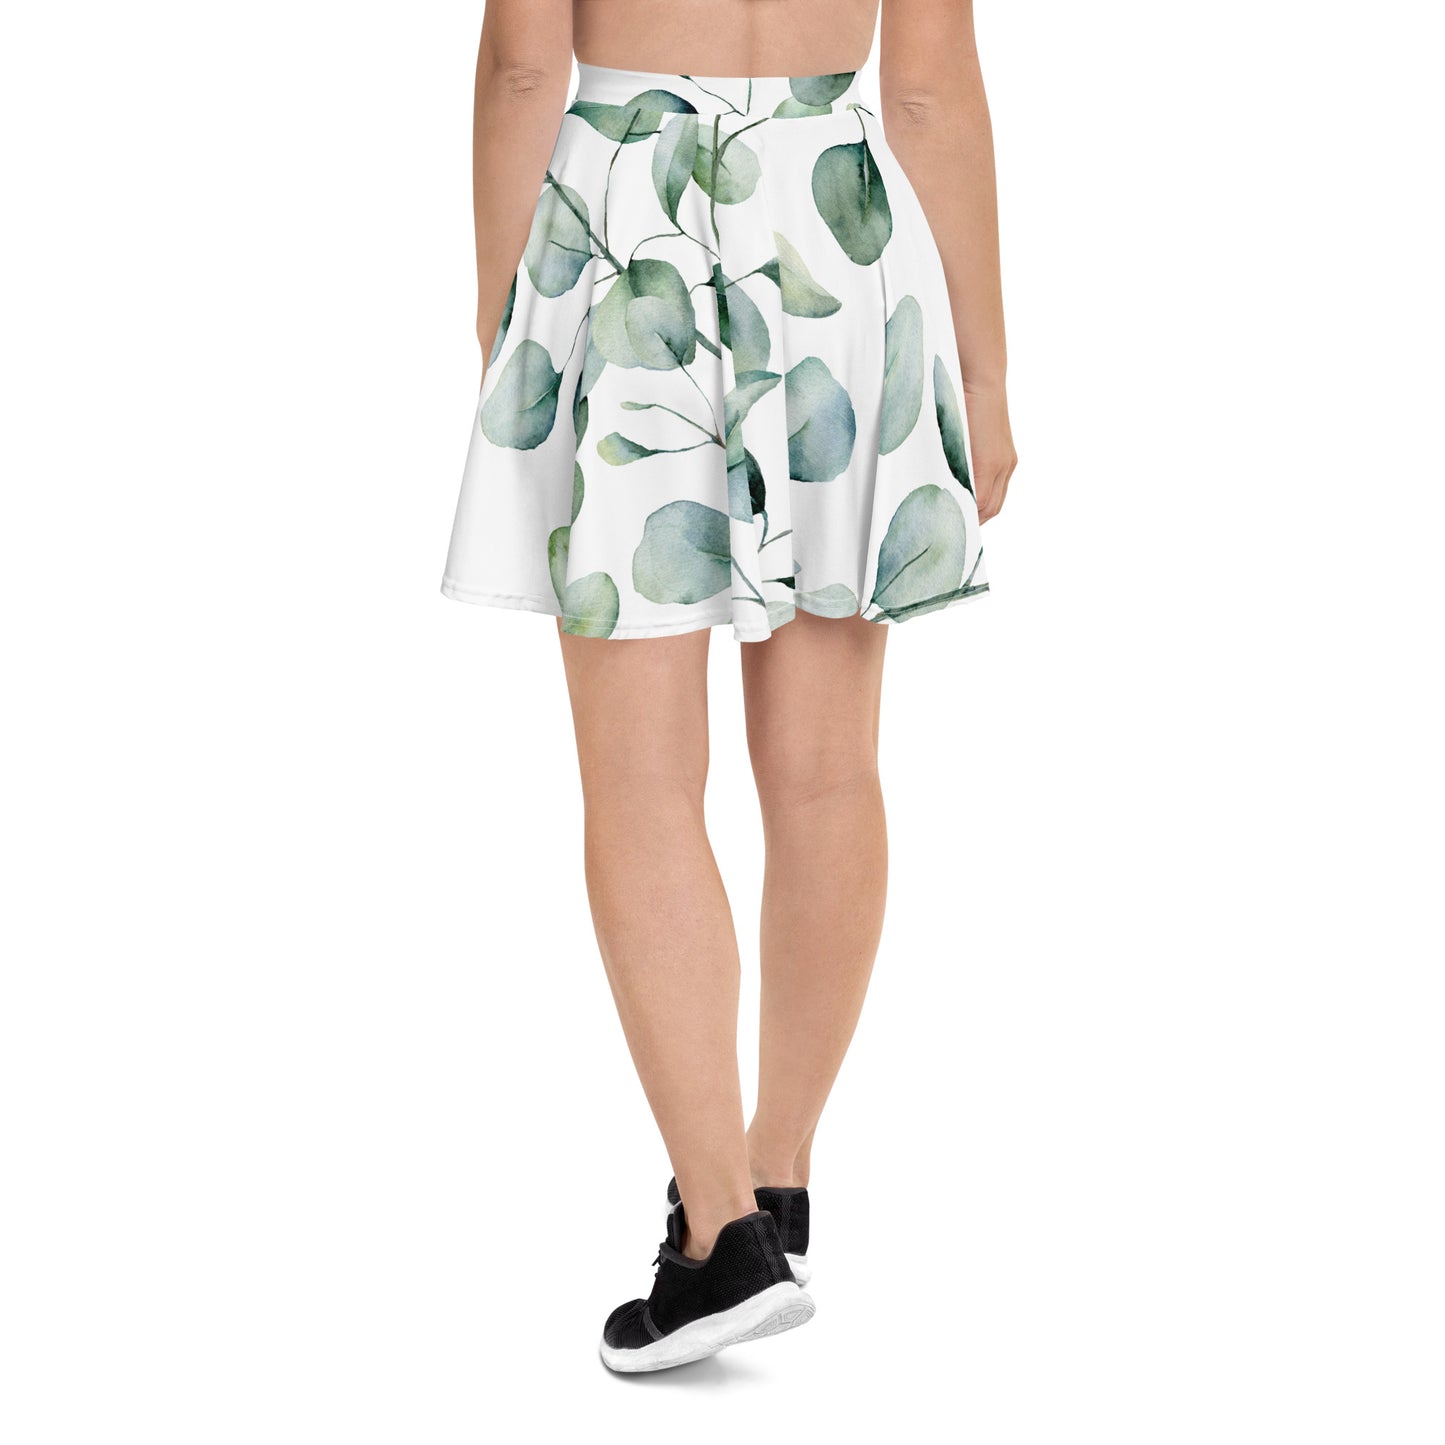 "Leaves" patterned skirt